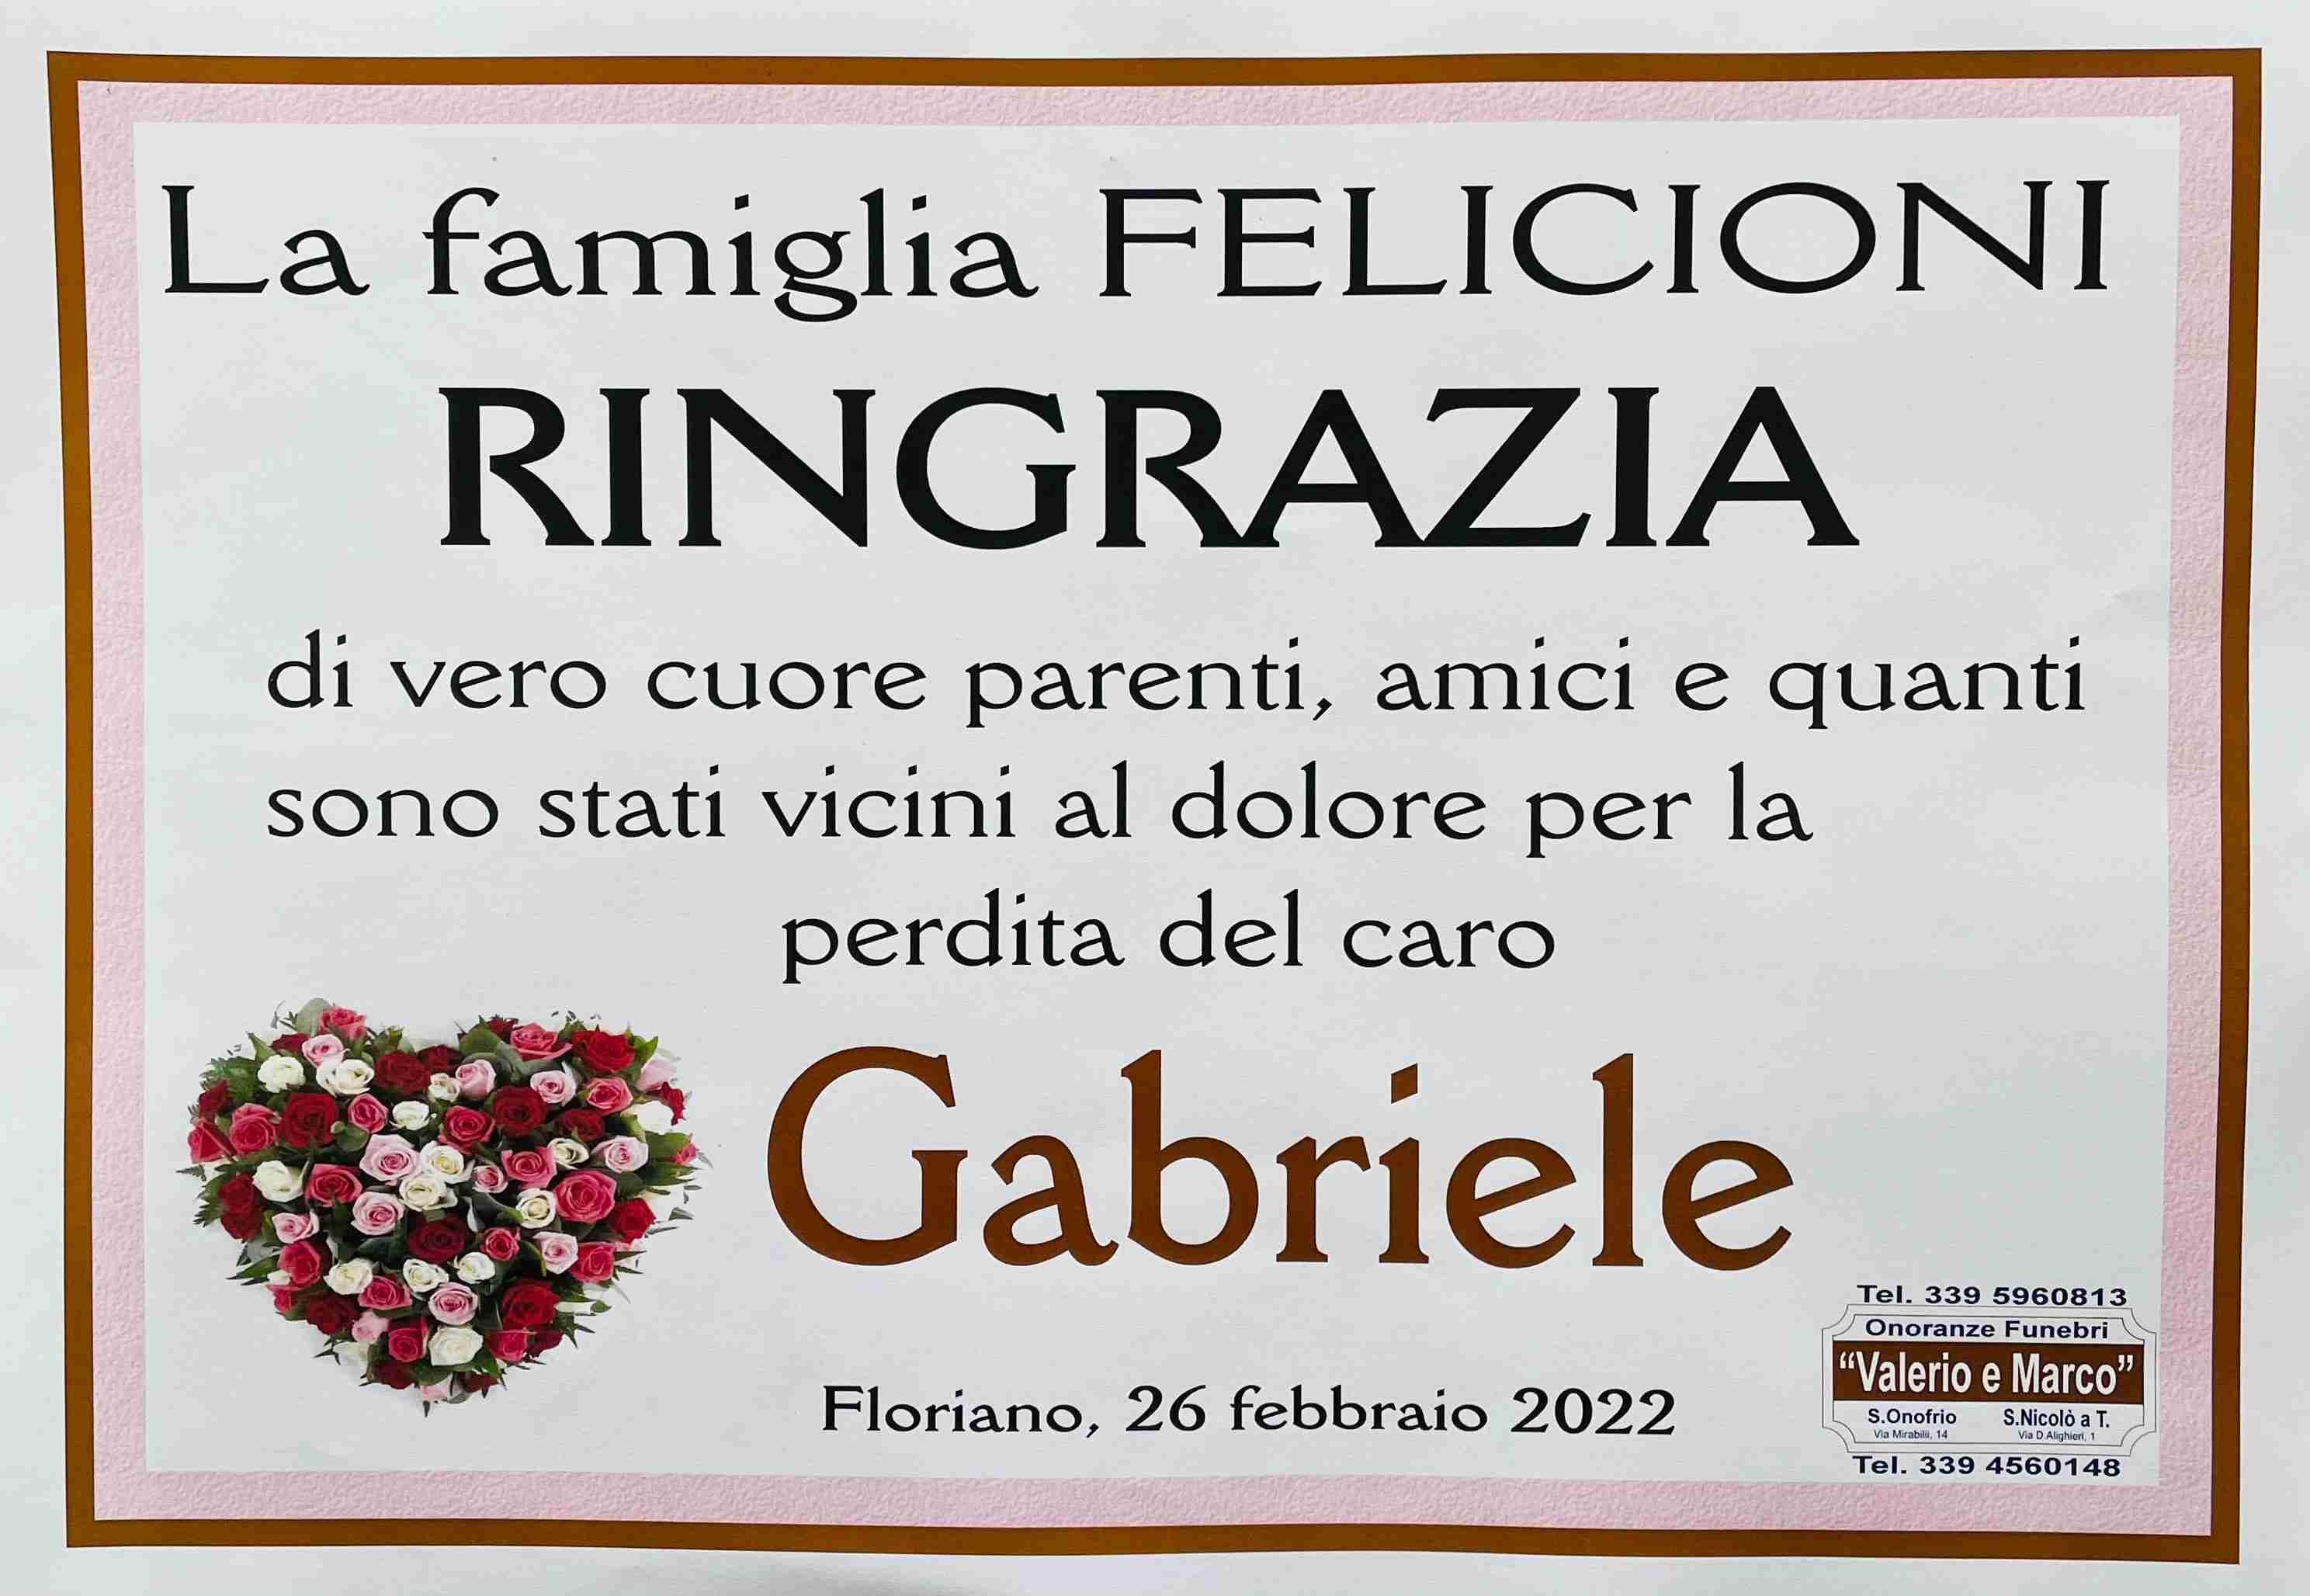 Gabriele Felicioni